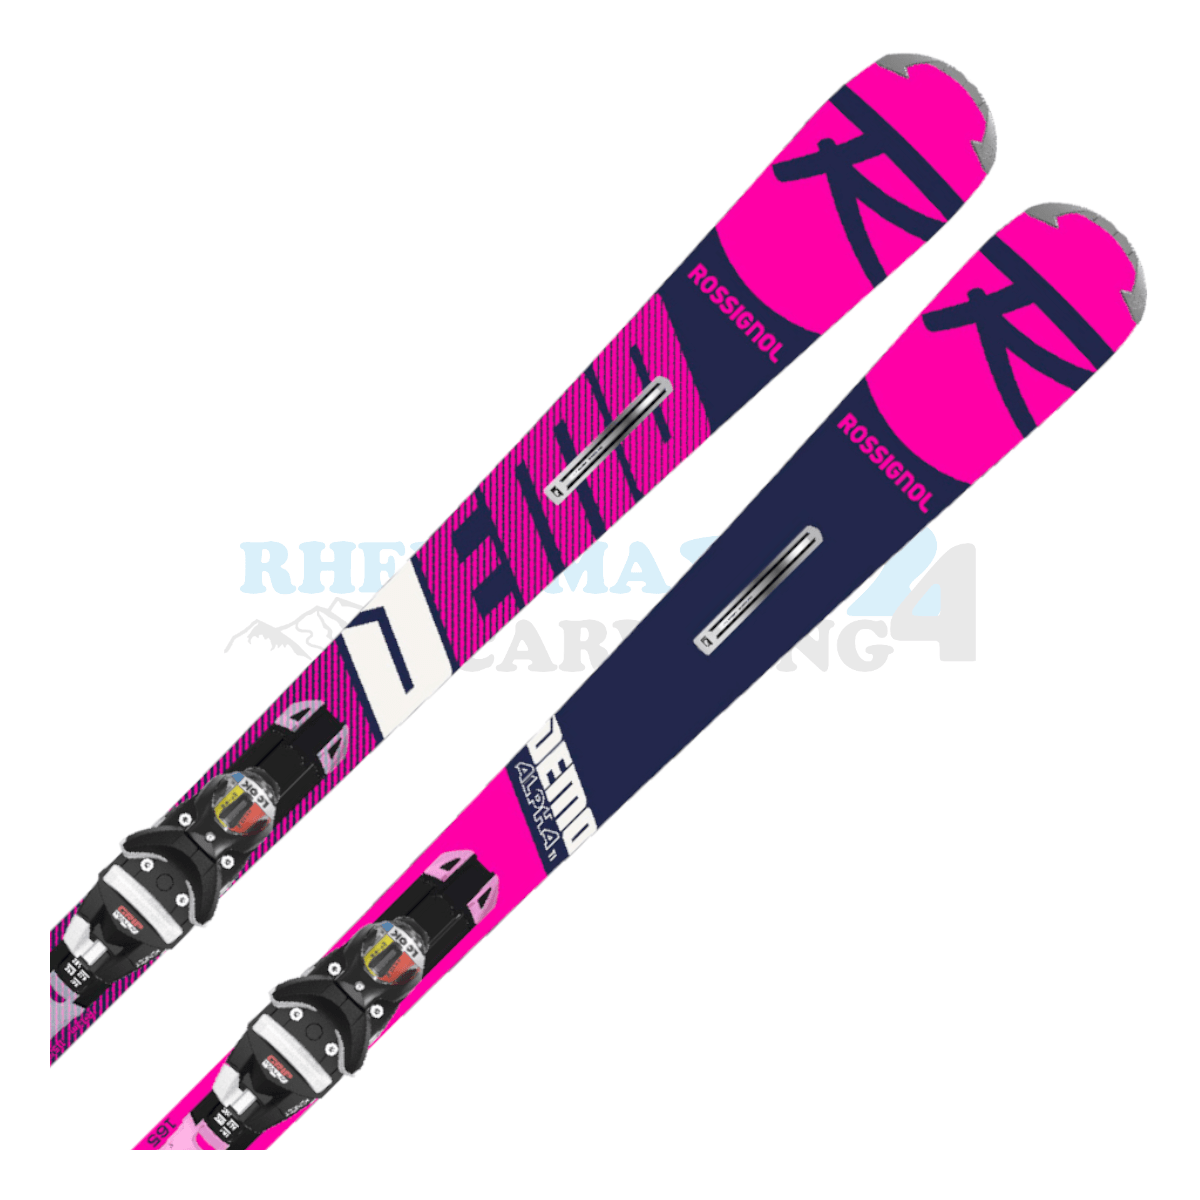 Rossignol Alpha Demo mit Platte sowie Bindung, der Ski ist in der Farbe pink-blau-weiß, die Ansicht des oberen Teils des Skis